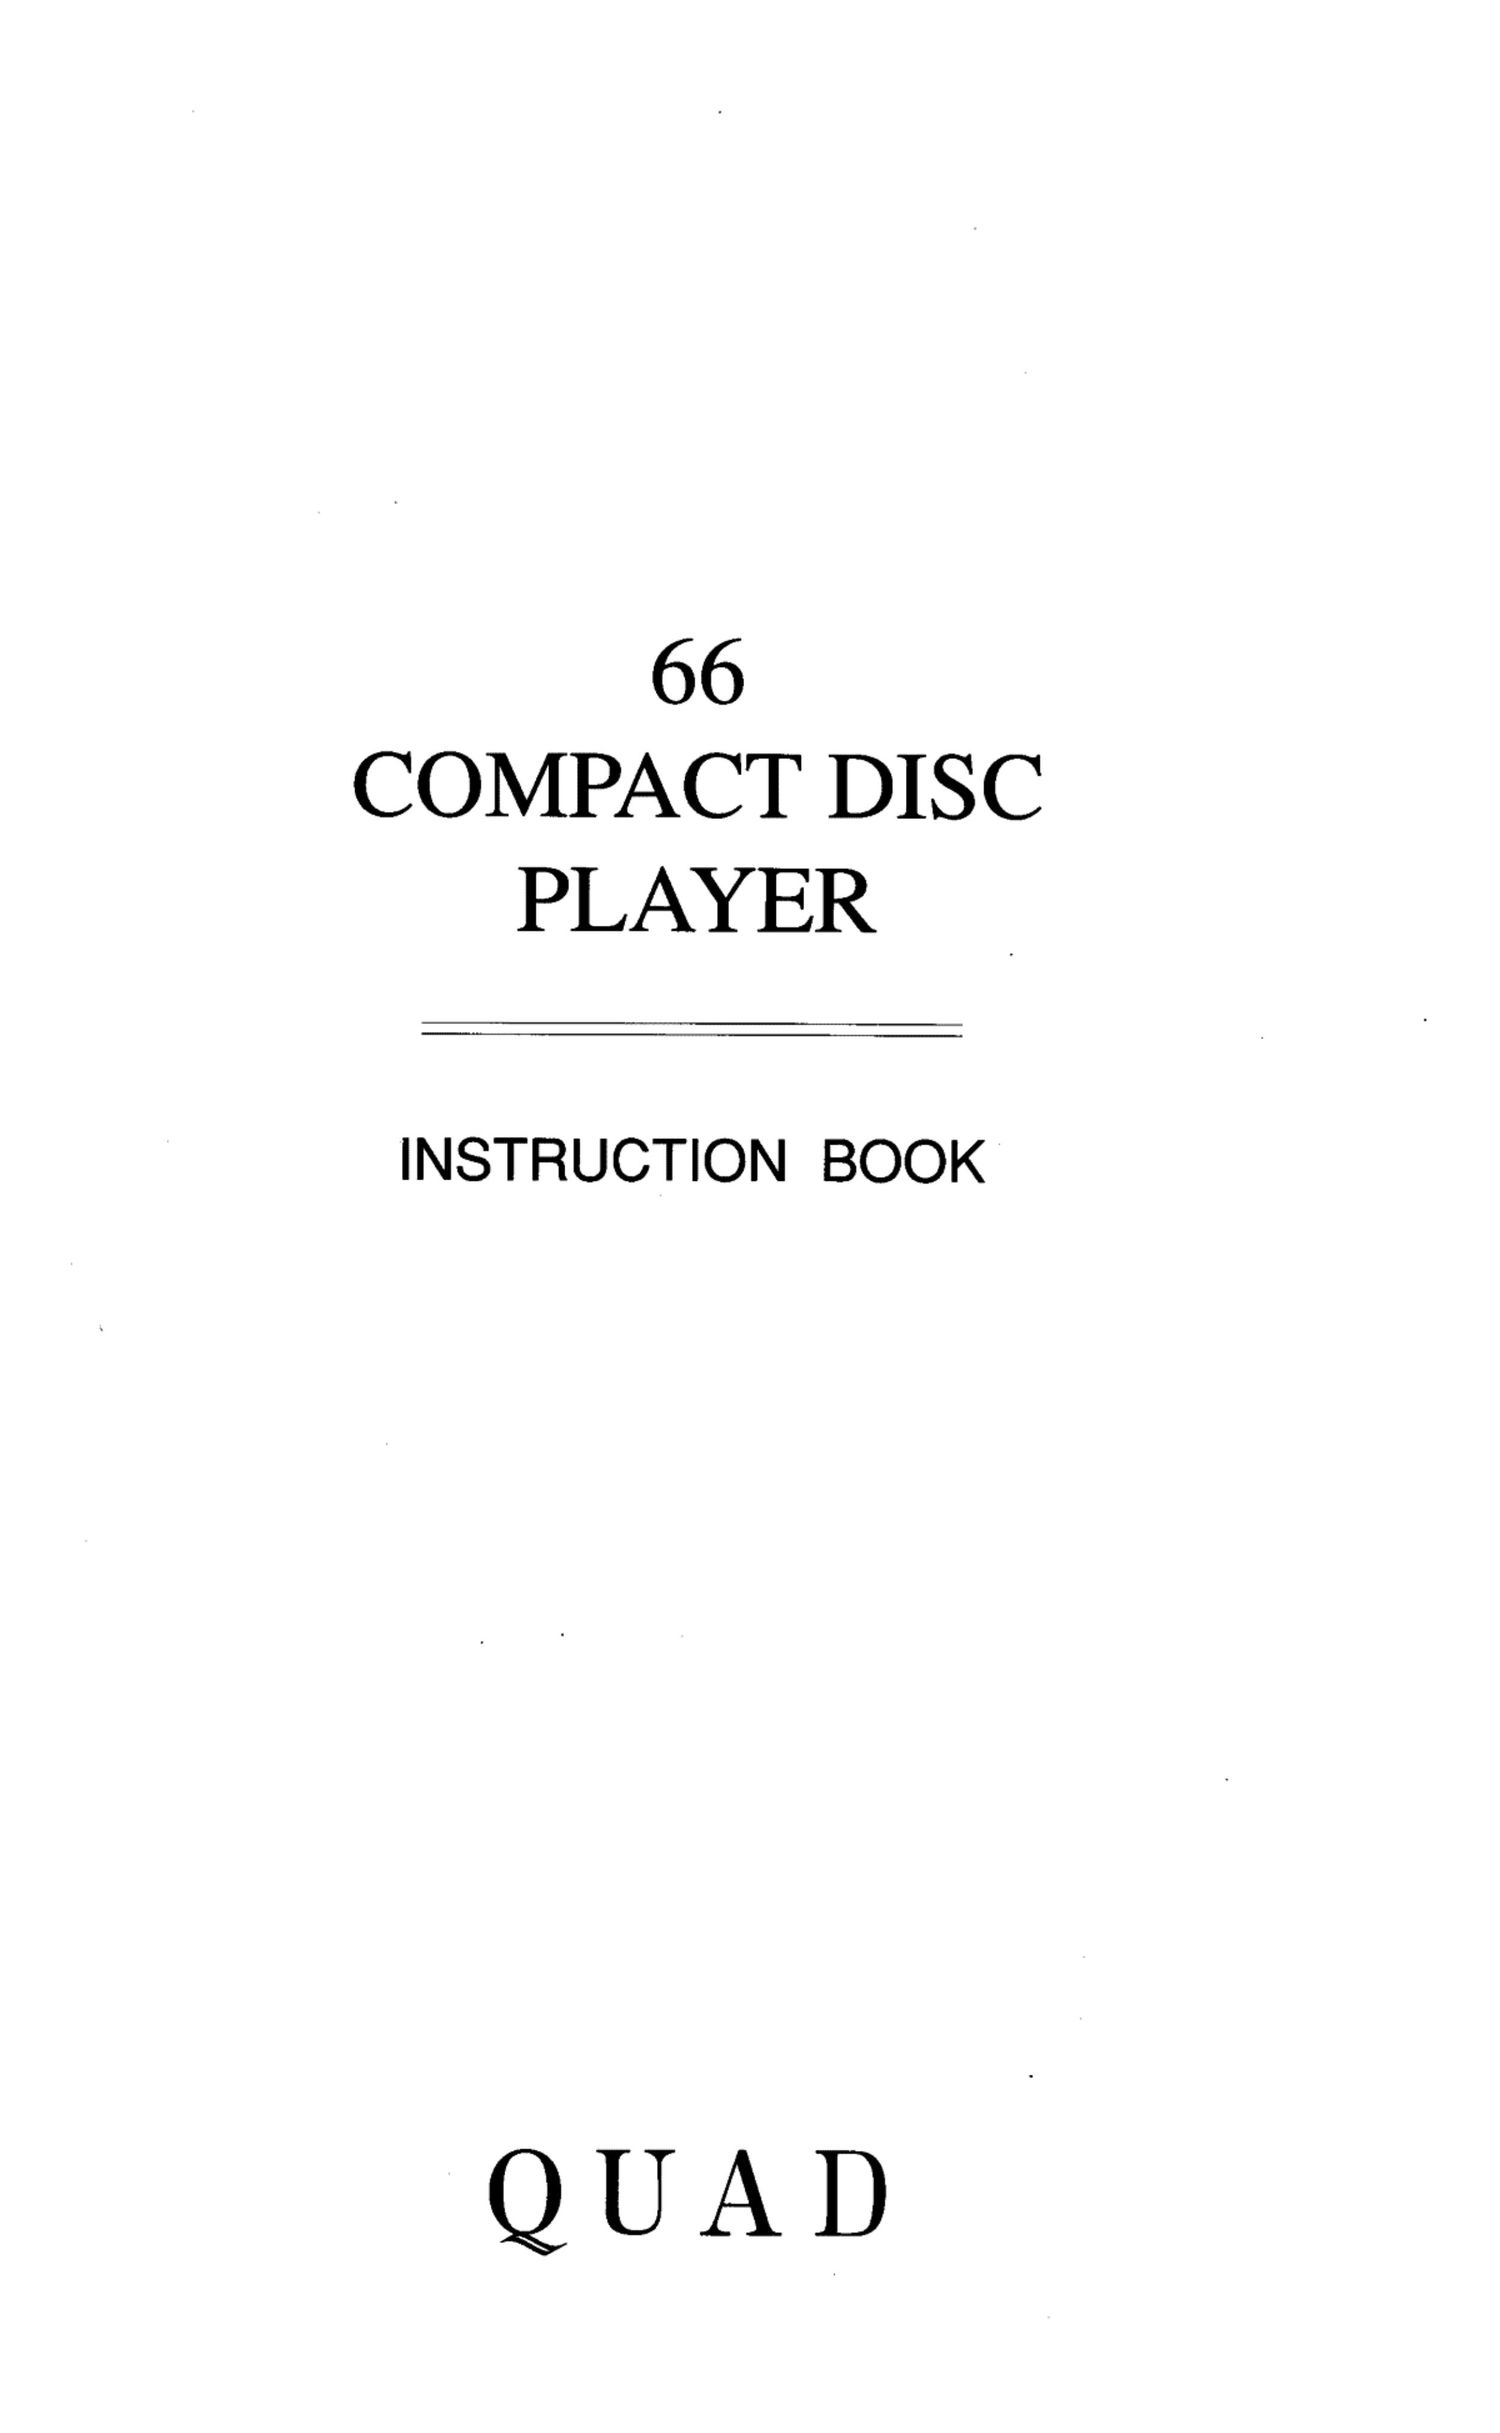 Quad CD 66 Owners Manual